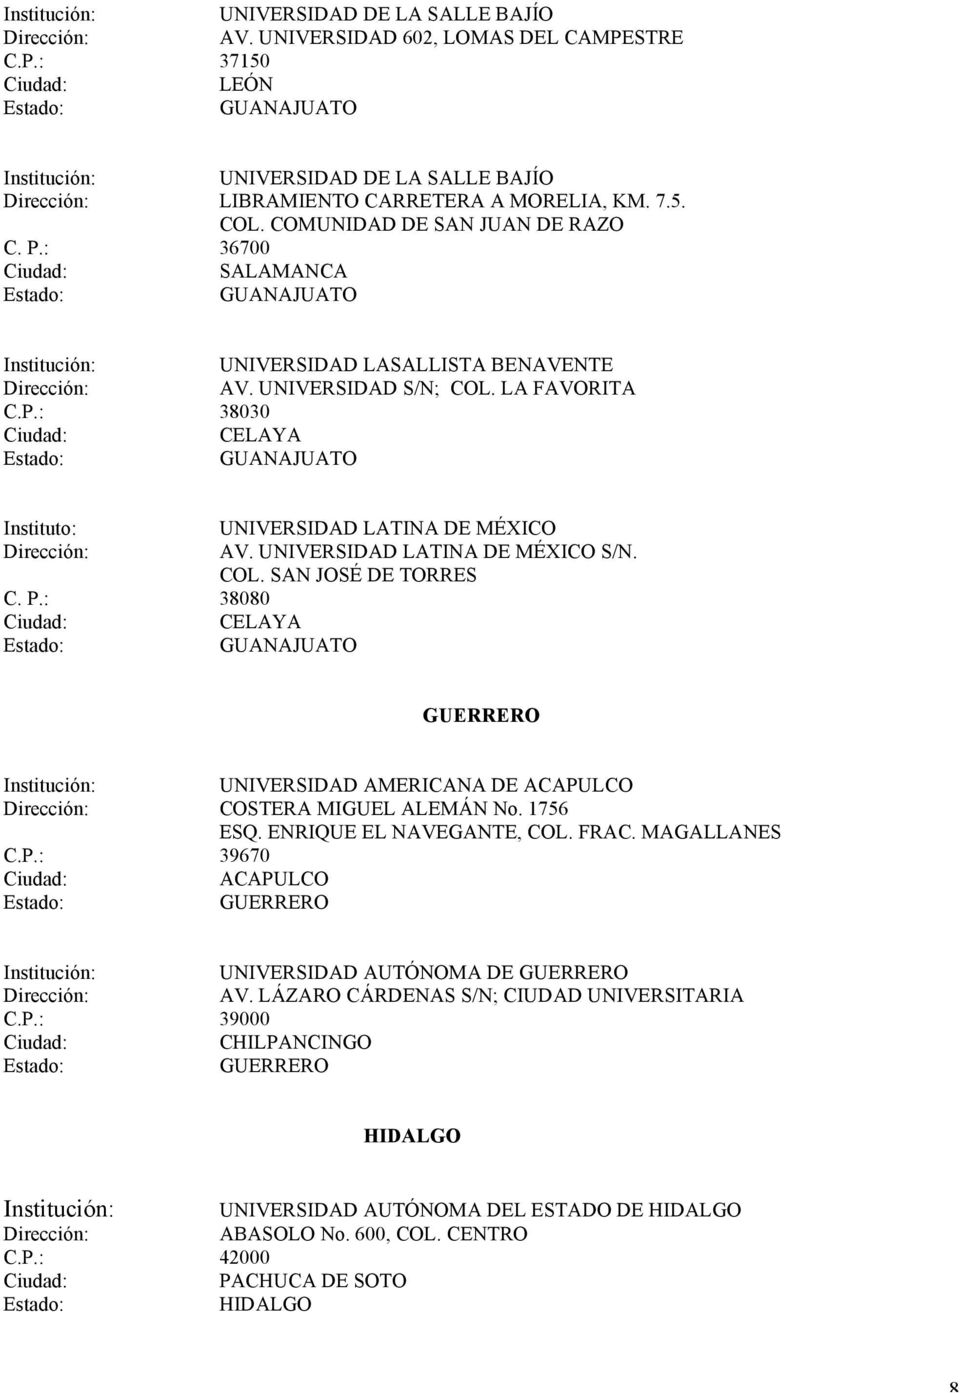 UNIVERSIDAD LATINA DE S/N. COL. SAN JOSÉ DE TORRES C. P.: 38080 CELAYA GUANAJUATO GUERRERO UNIVERSIDAD AMERICANA DE ACAPULCO COSTERA MIGUEL ALEMÁN No. 1756 ESQ. ENRIQUE EL NAVEGANTE, COL. FRAC.